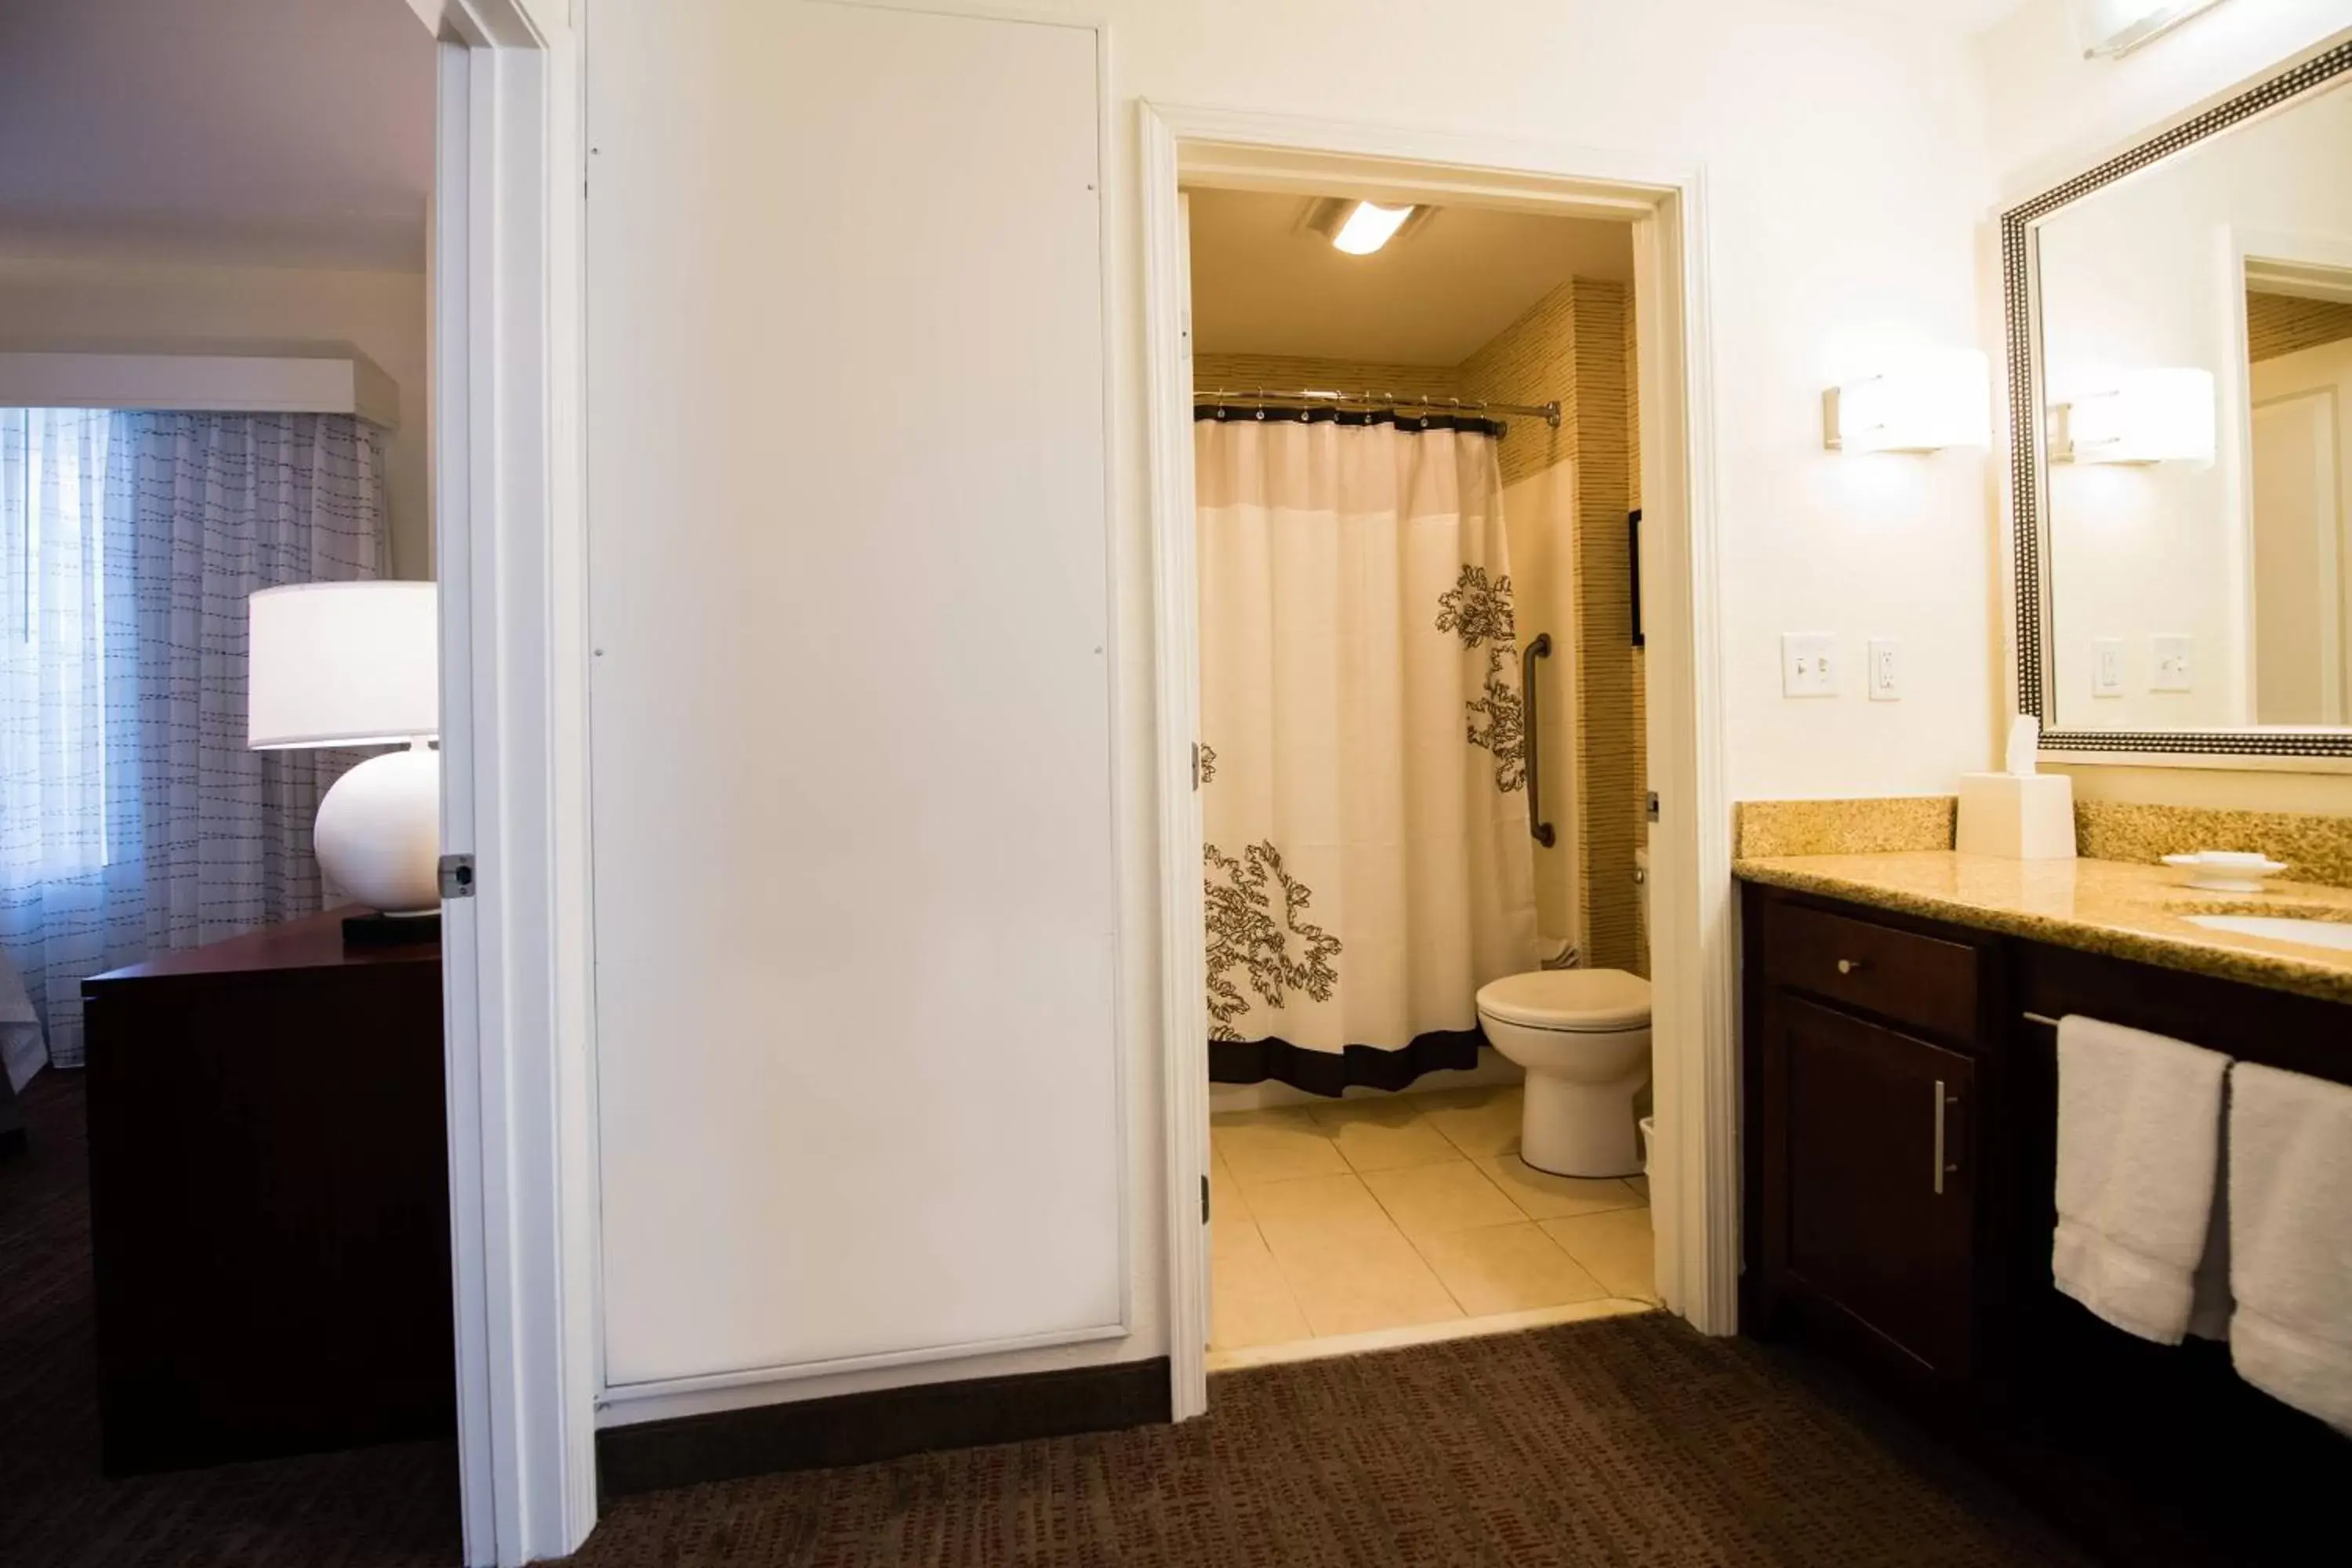 Bedroom, Bathroom in Residence Inn by Marriott Amelia Island